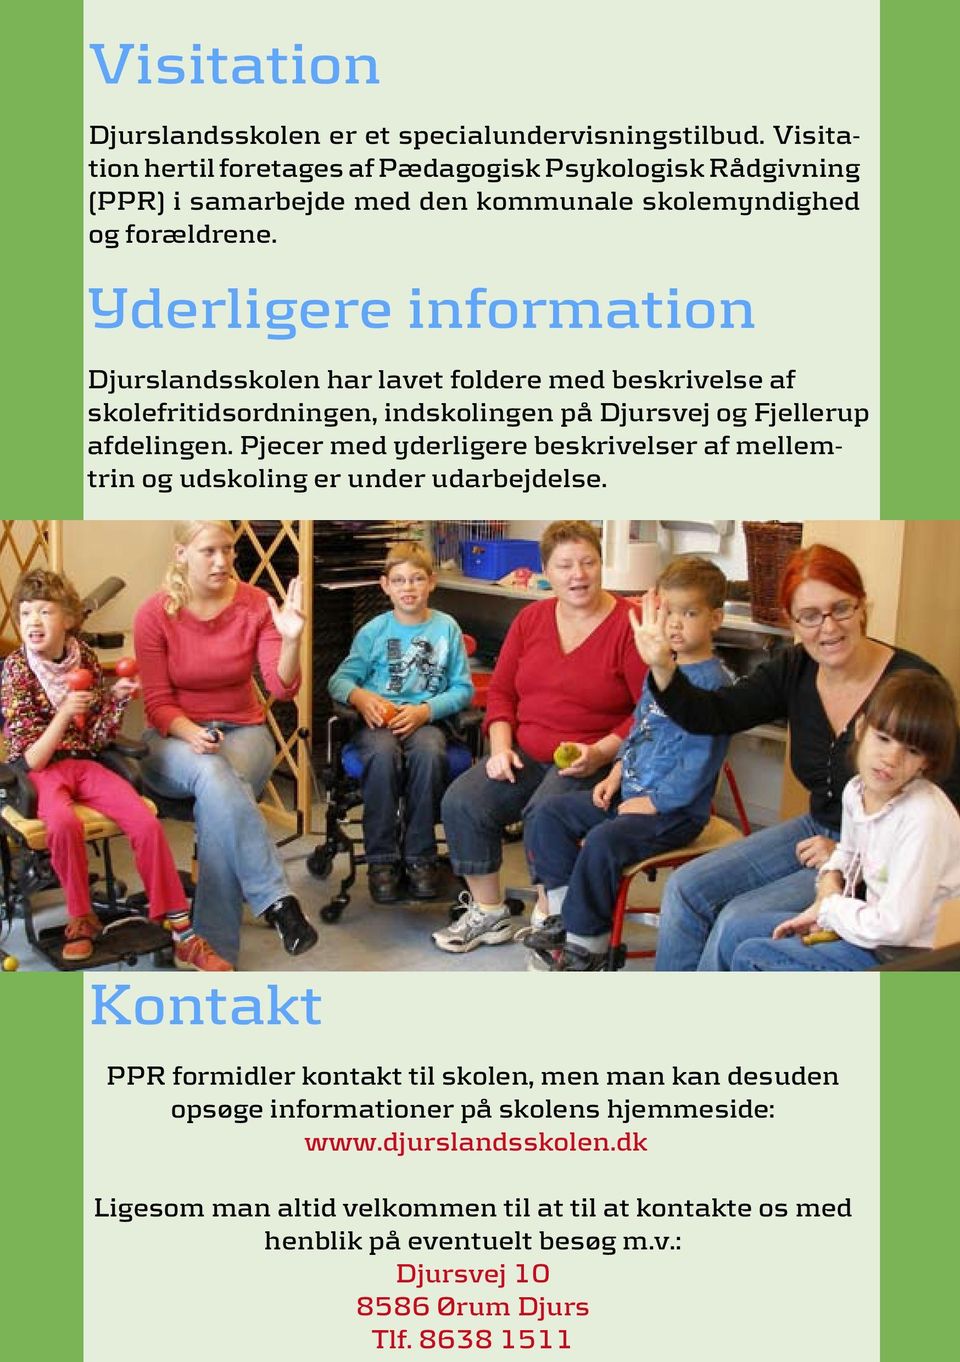 Yderligere information Djurslandsskolen har lavet foldere med beskrivelse af skolefritidsordningen, indskolingen på Djursvej og Fjellerup afdelingen.